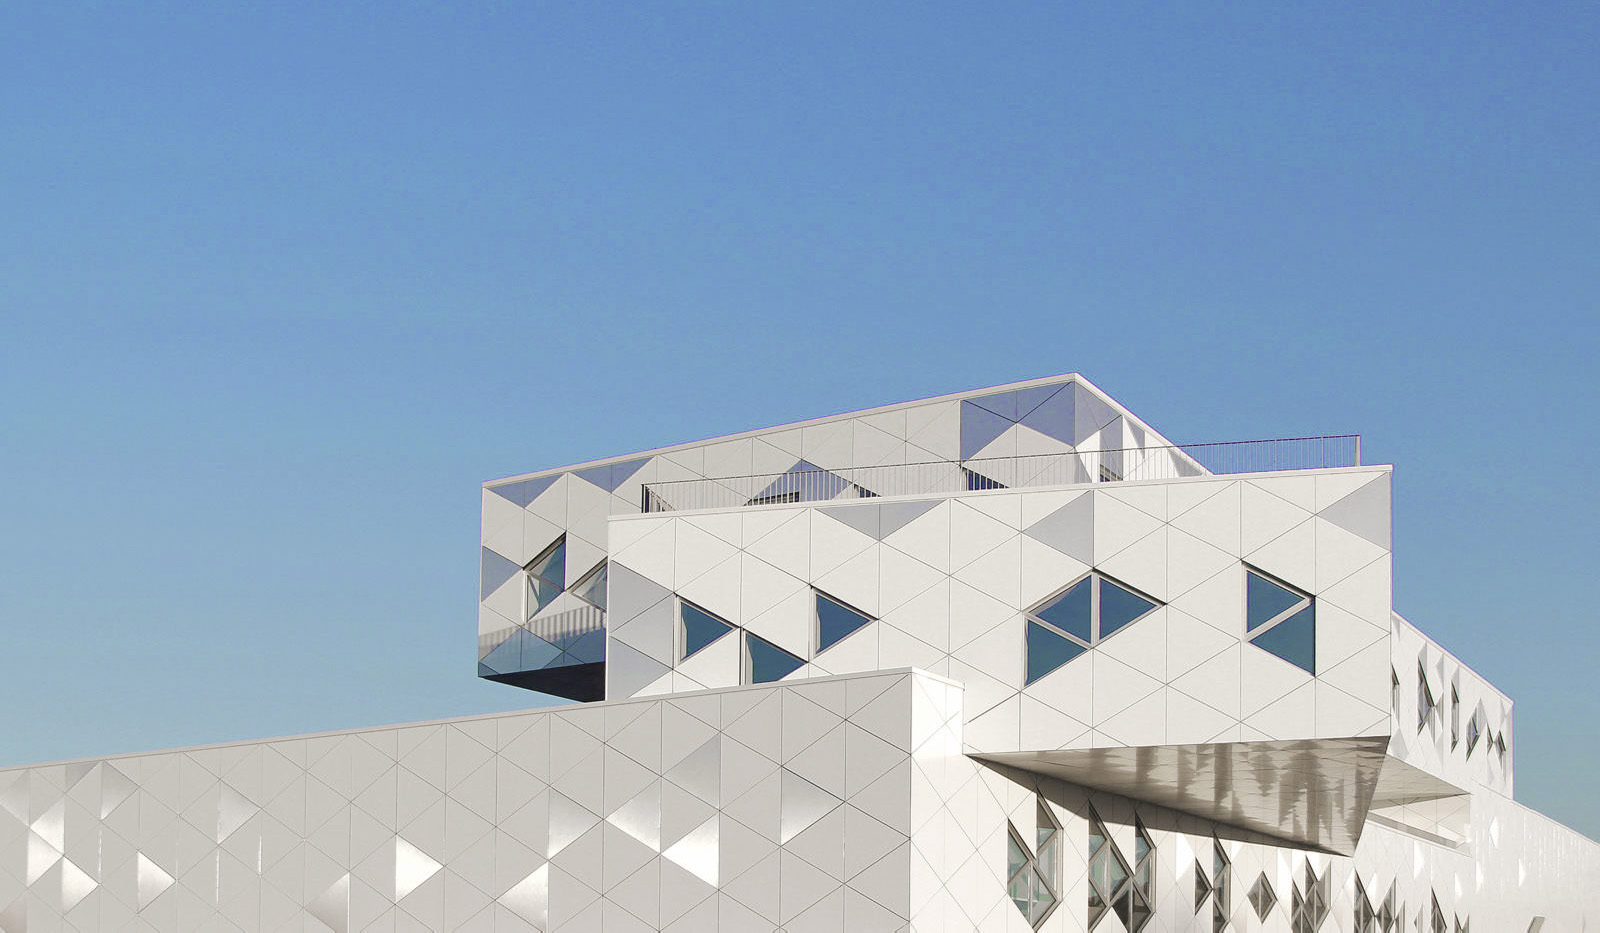 Photographie cadrée sur le haut du bâtiment de ETERA, vue en contre-plongée sur les 3 volumes superposés mais non-alignés, fenêtres et motifs sur la facade blanche de la même taille triangulaire